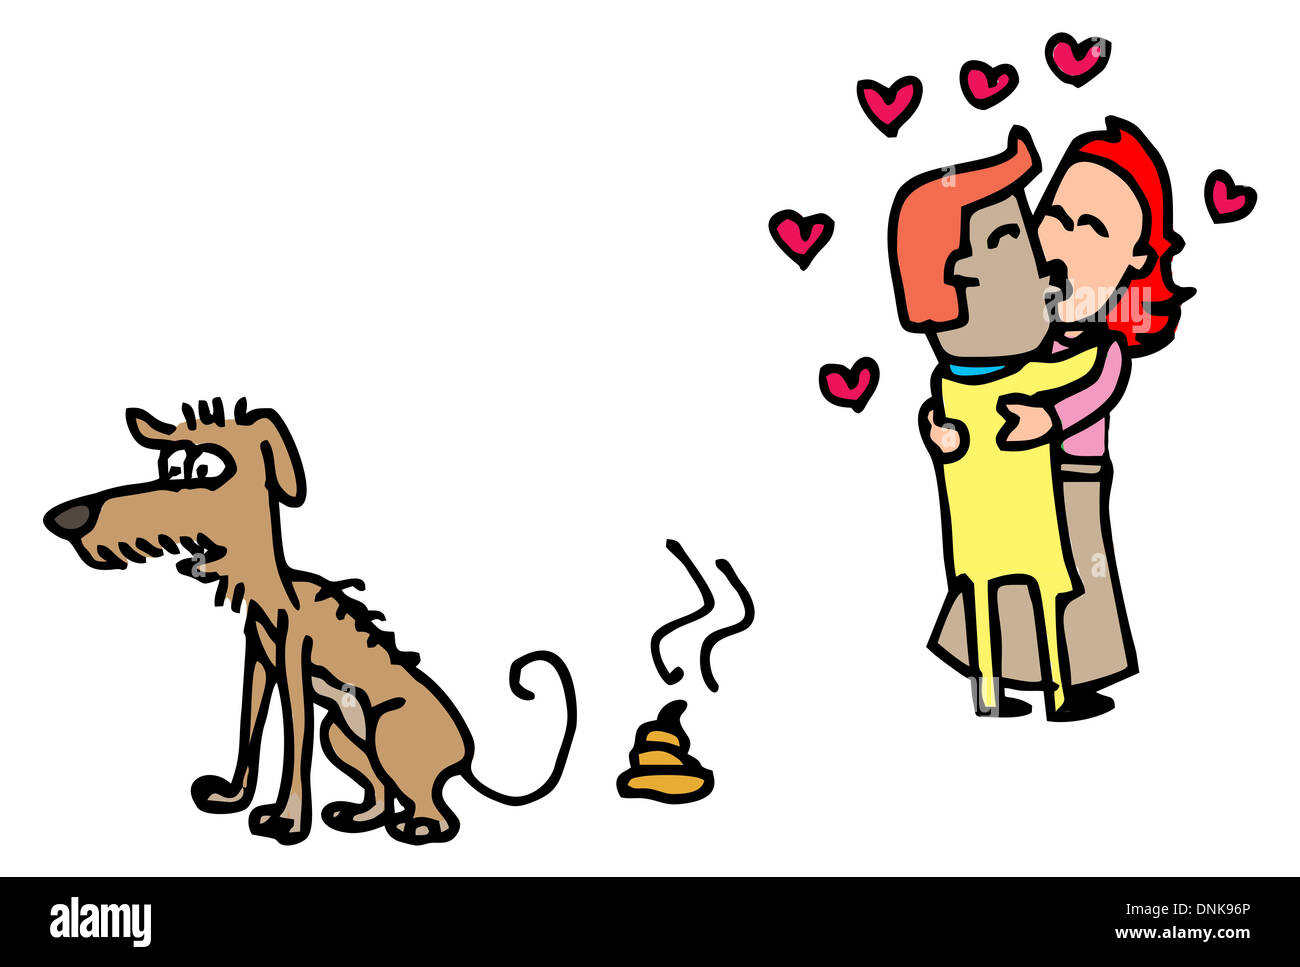 Représentation d'illustration de l'amour de chien Poo et oiseaux Banque D'Images